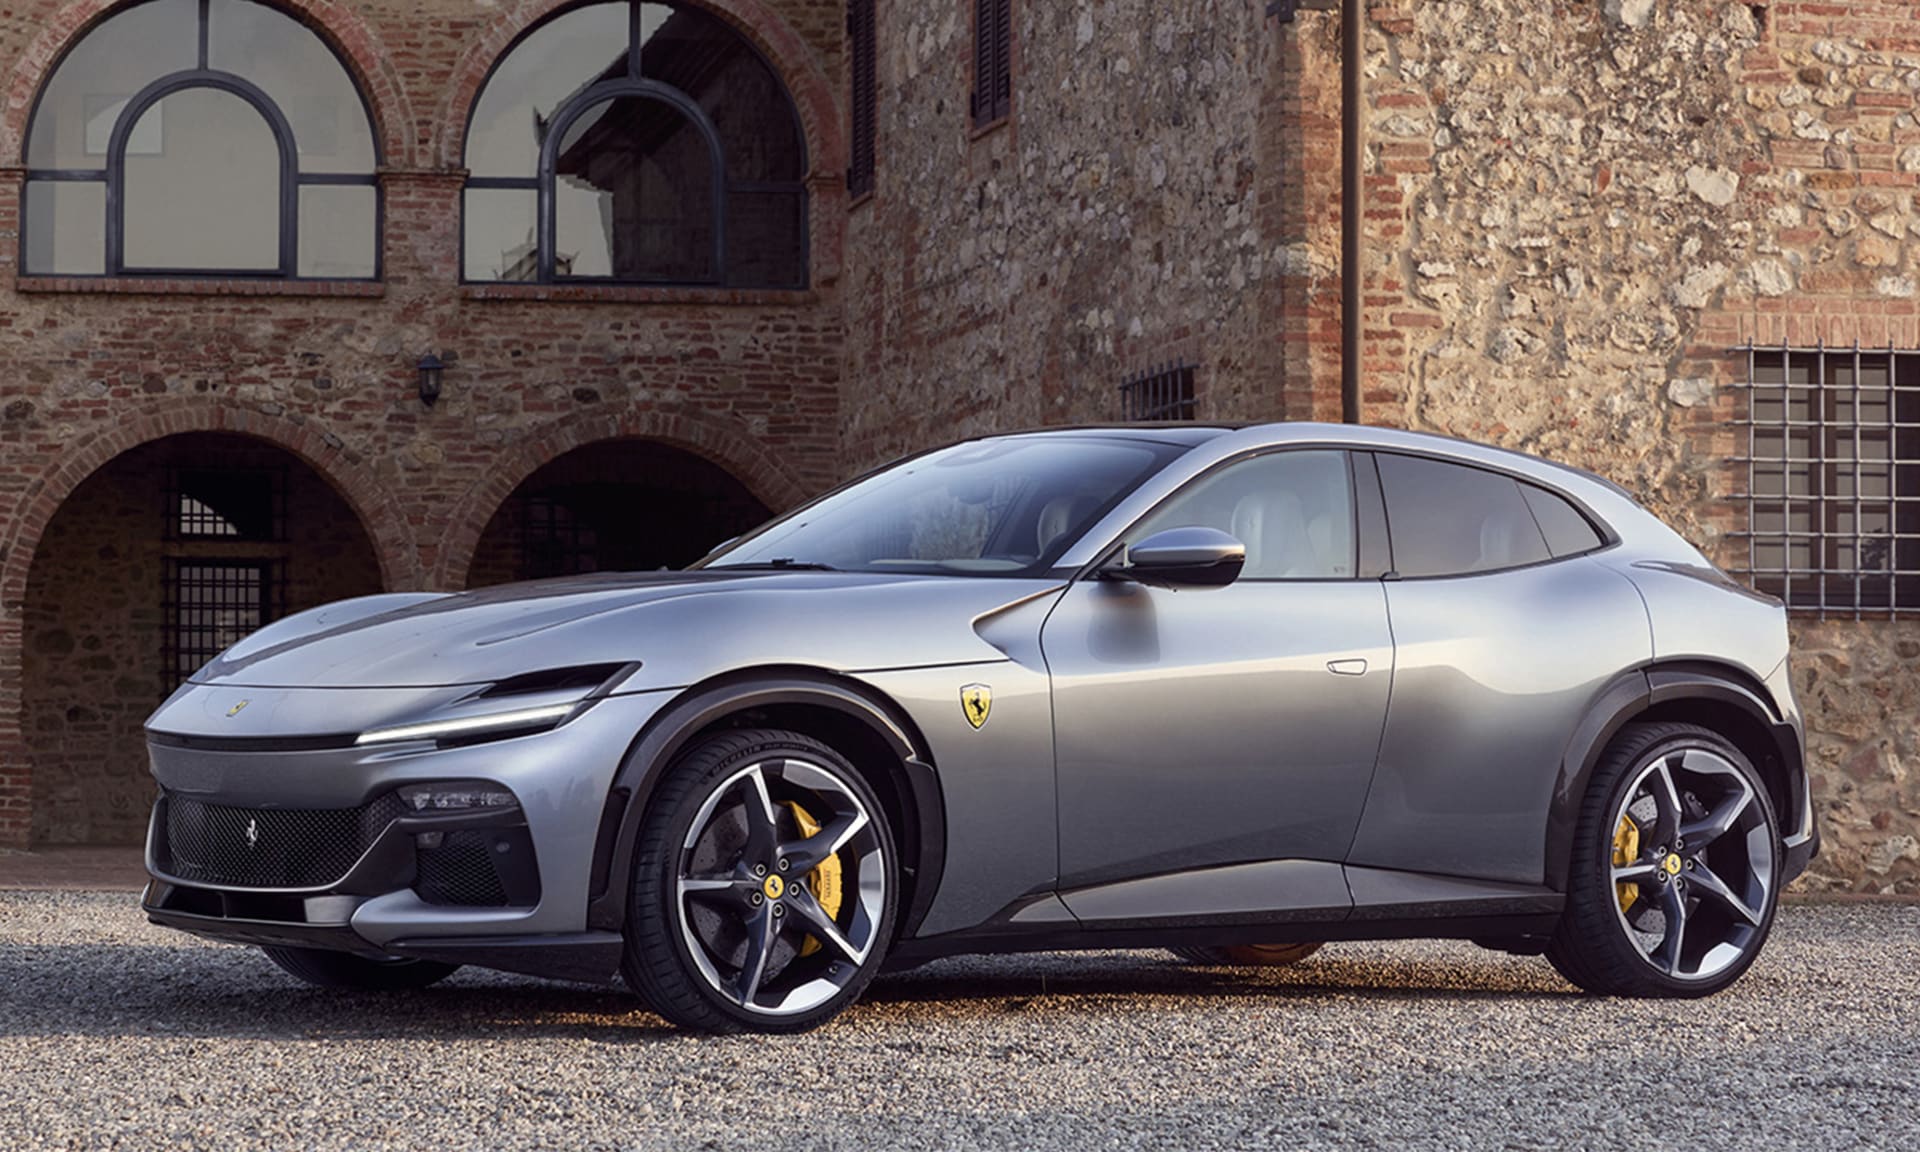 Produkce Ferrari sice přesahuje povolených 10 000, pro výjimku jsou ale klíčové registrace na území EU a do tohoto limitu se italská značka hravě vejde.